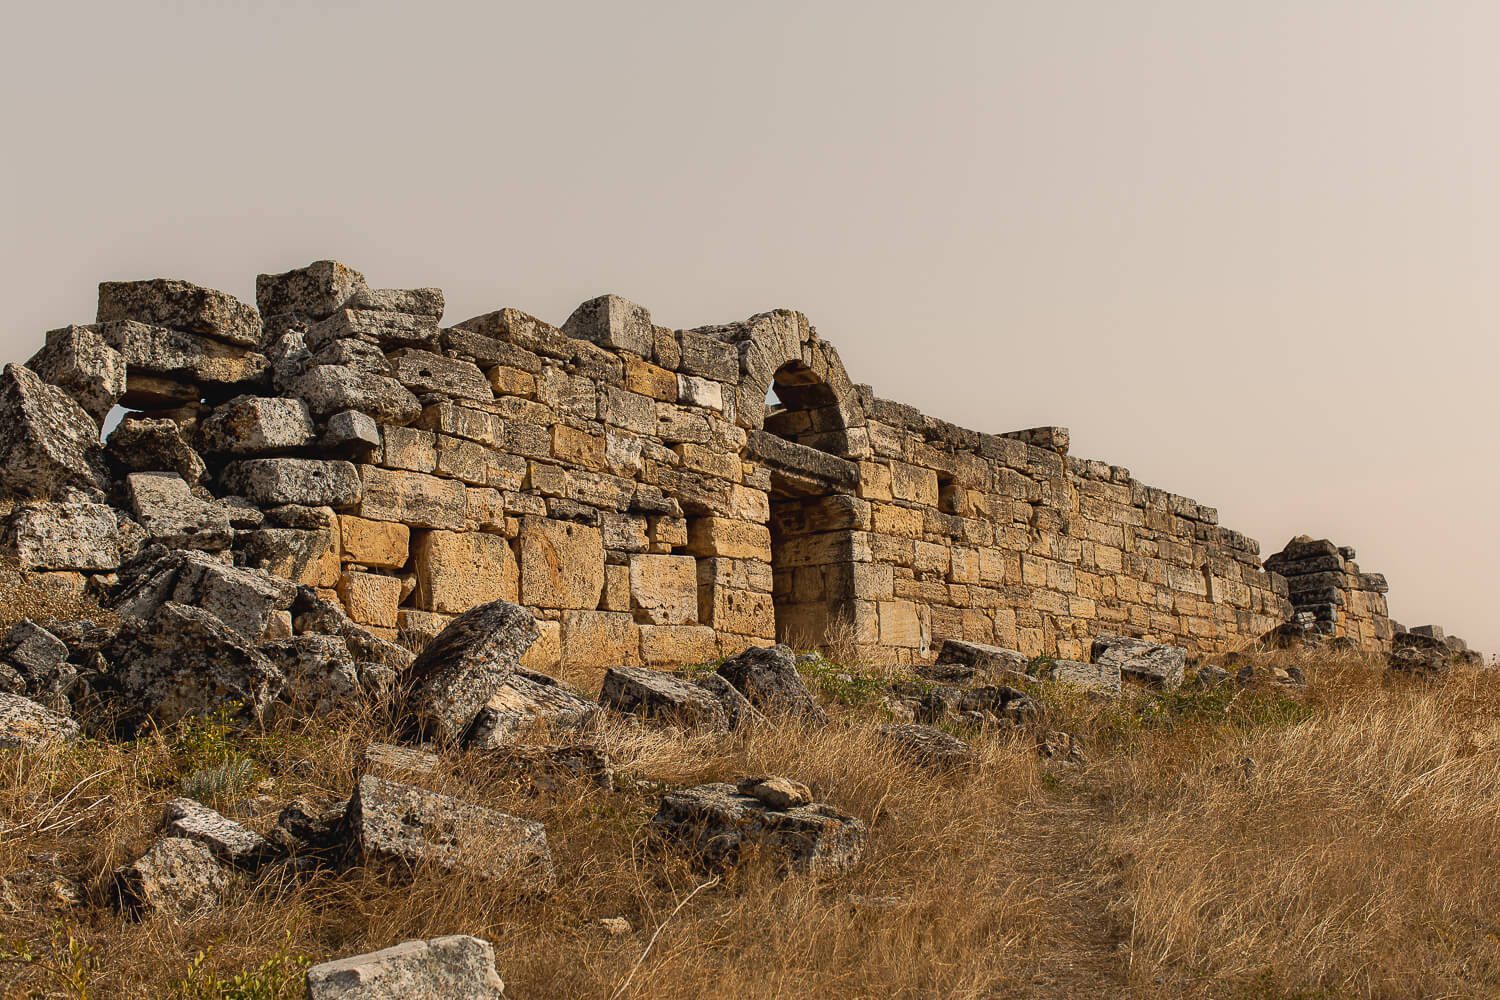 The Necropolis of Hierapolis